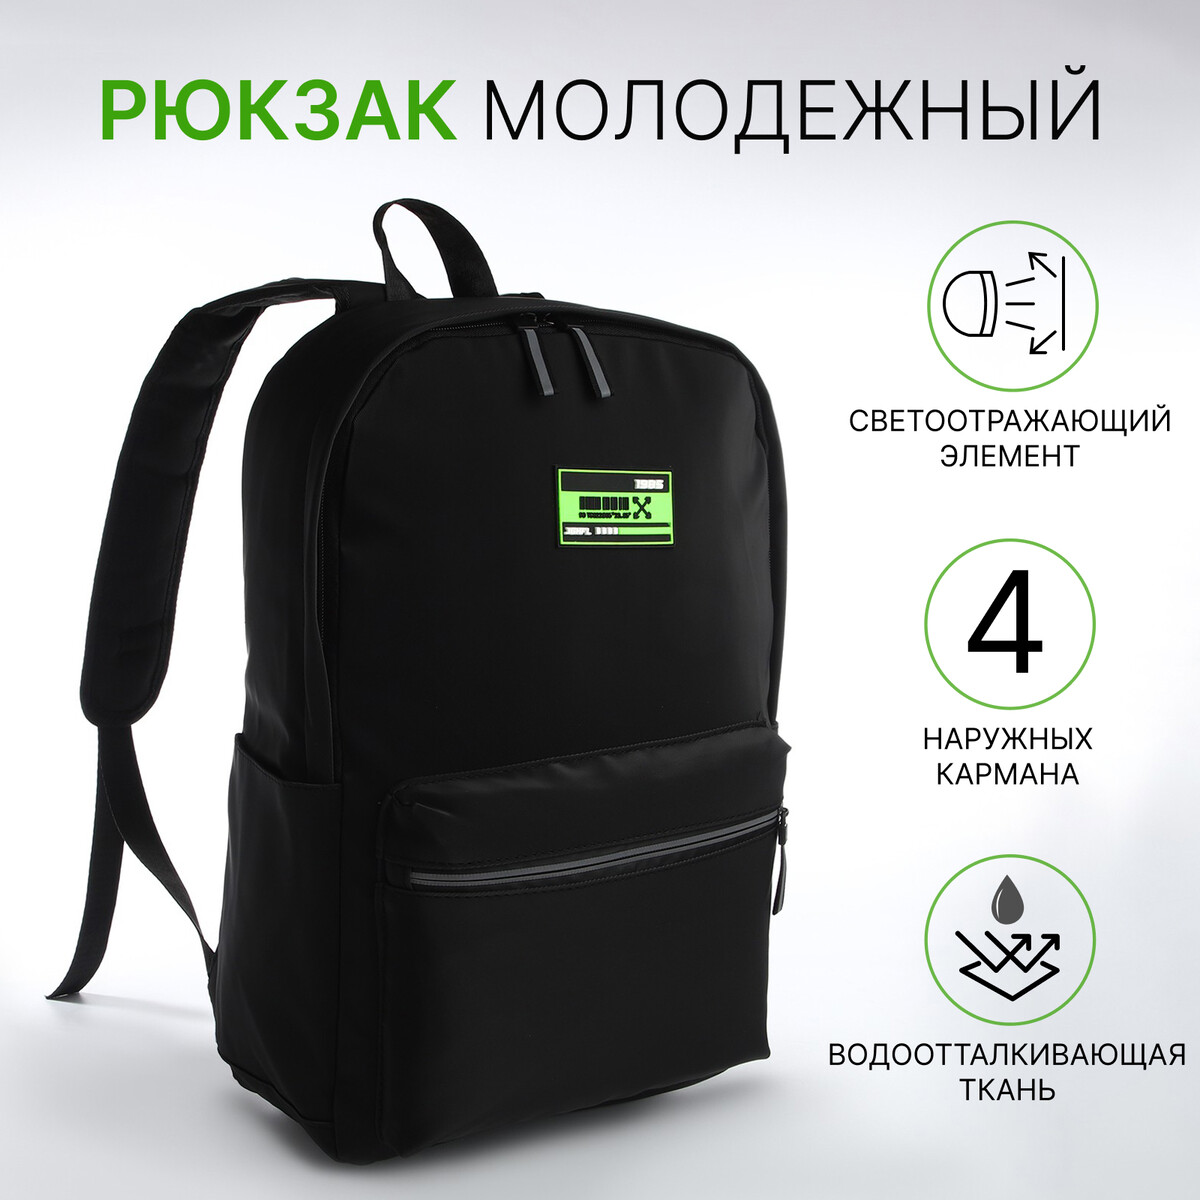 Рюкзак молодежный из текстиля на молнии, 2 кармана, цвет черный/зеленый рюкзак школьный из текстиля на молнии 3 кармана пенал зеленый